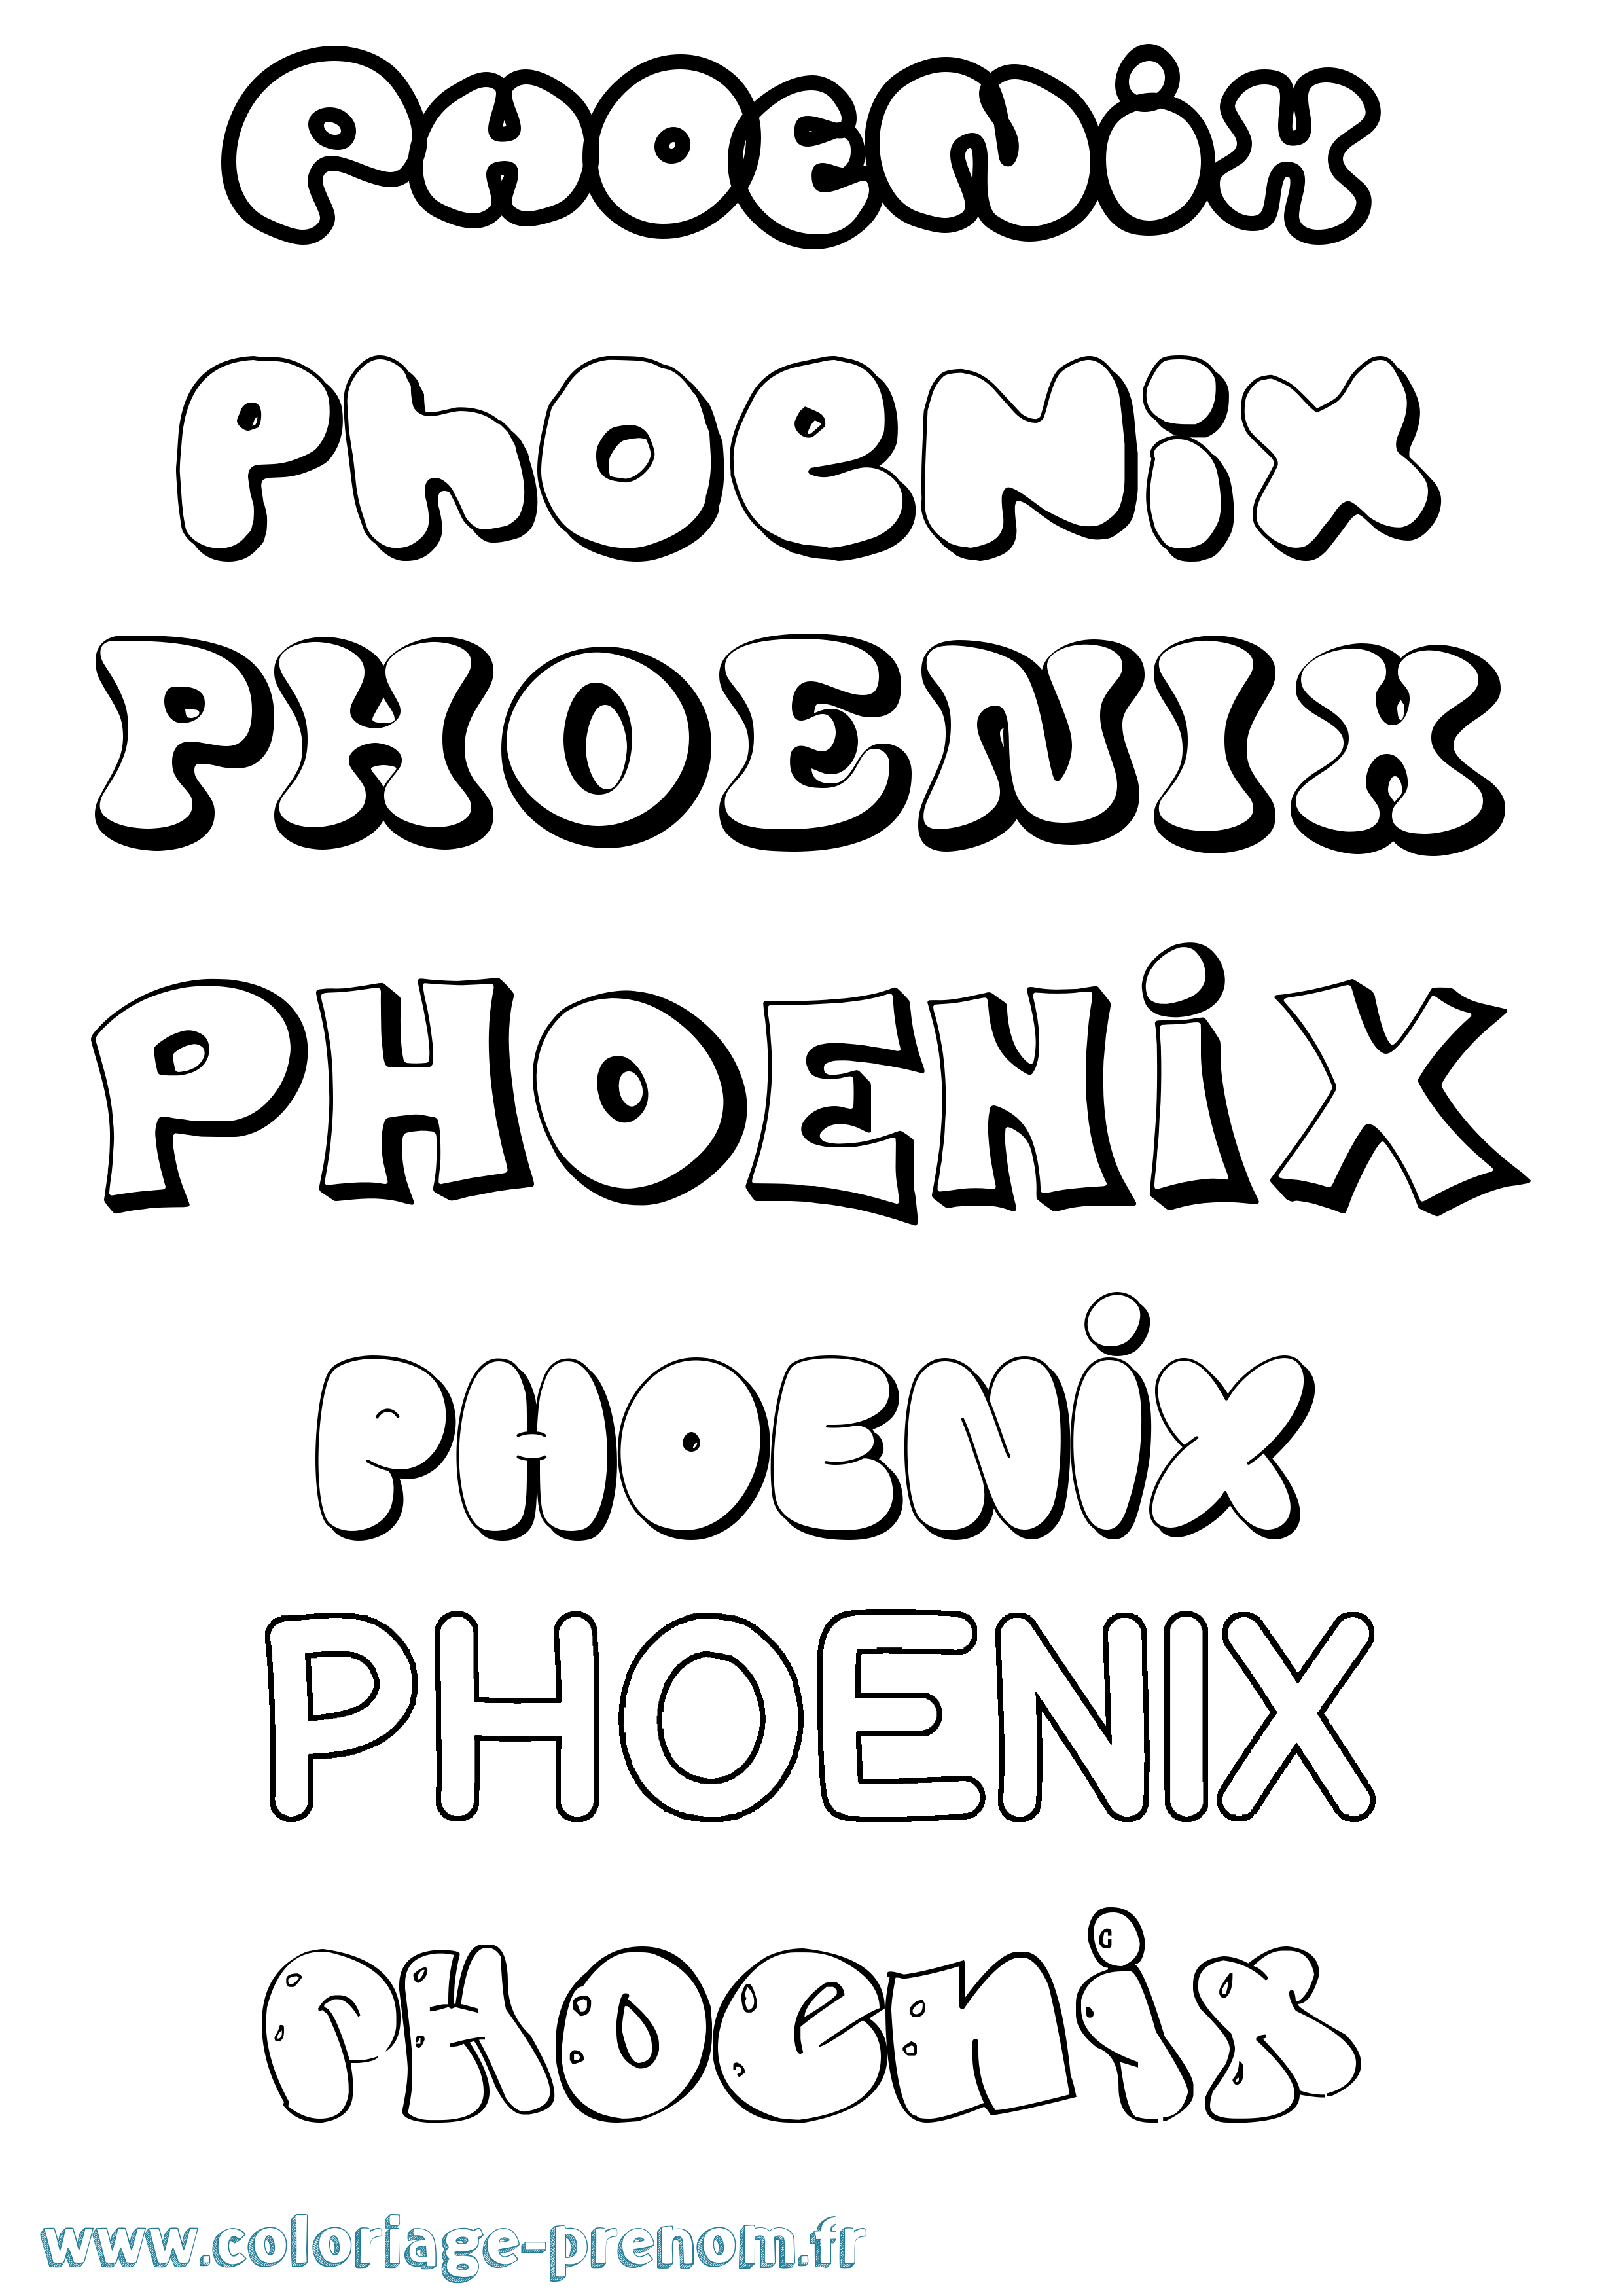 Coloriage prénom Phoenix Bubble